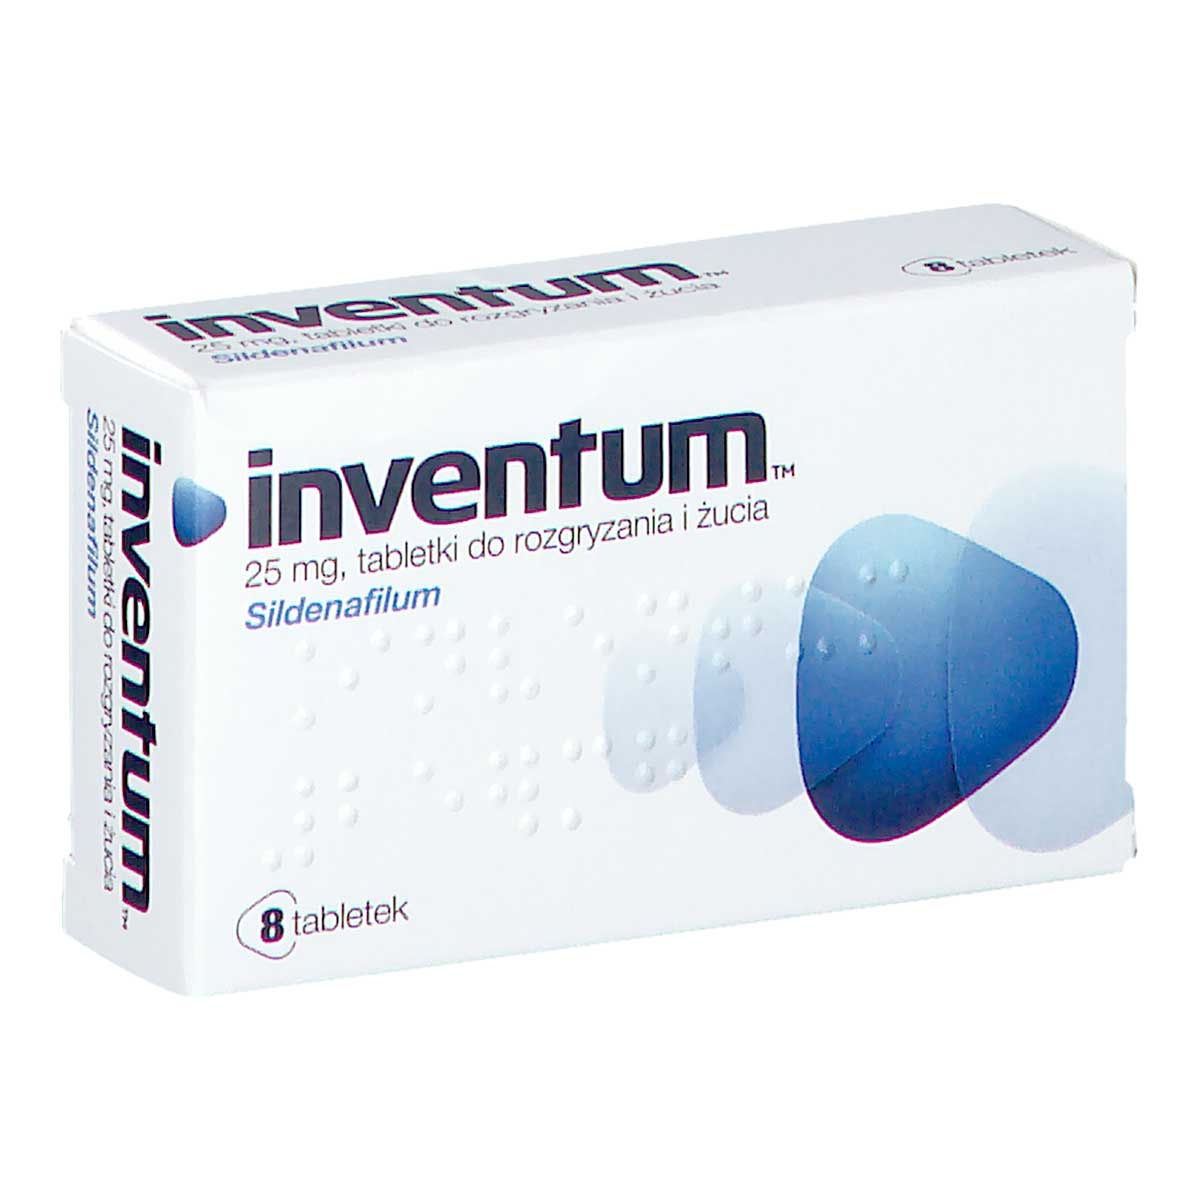 inventum tabletki 8